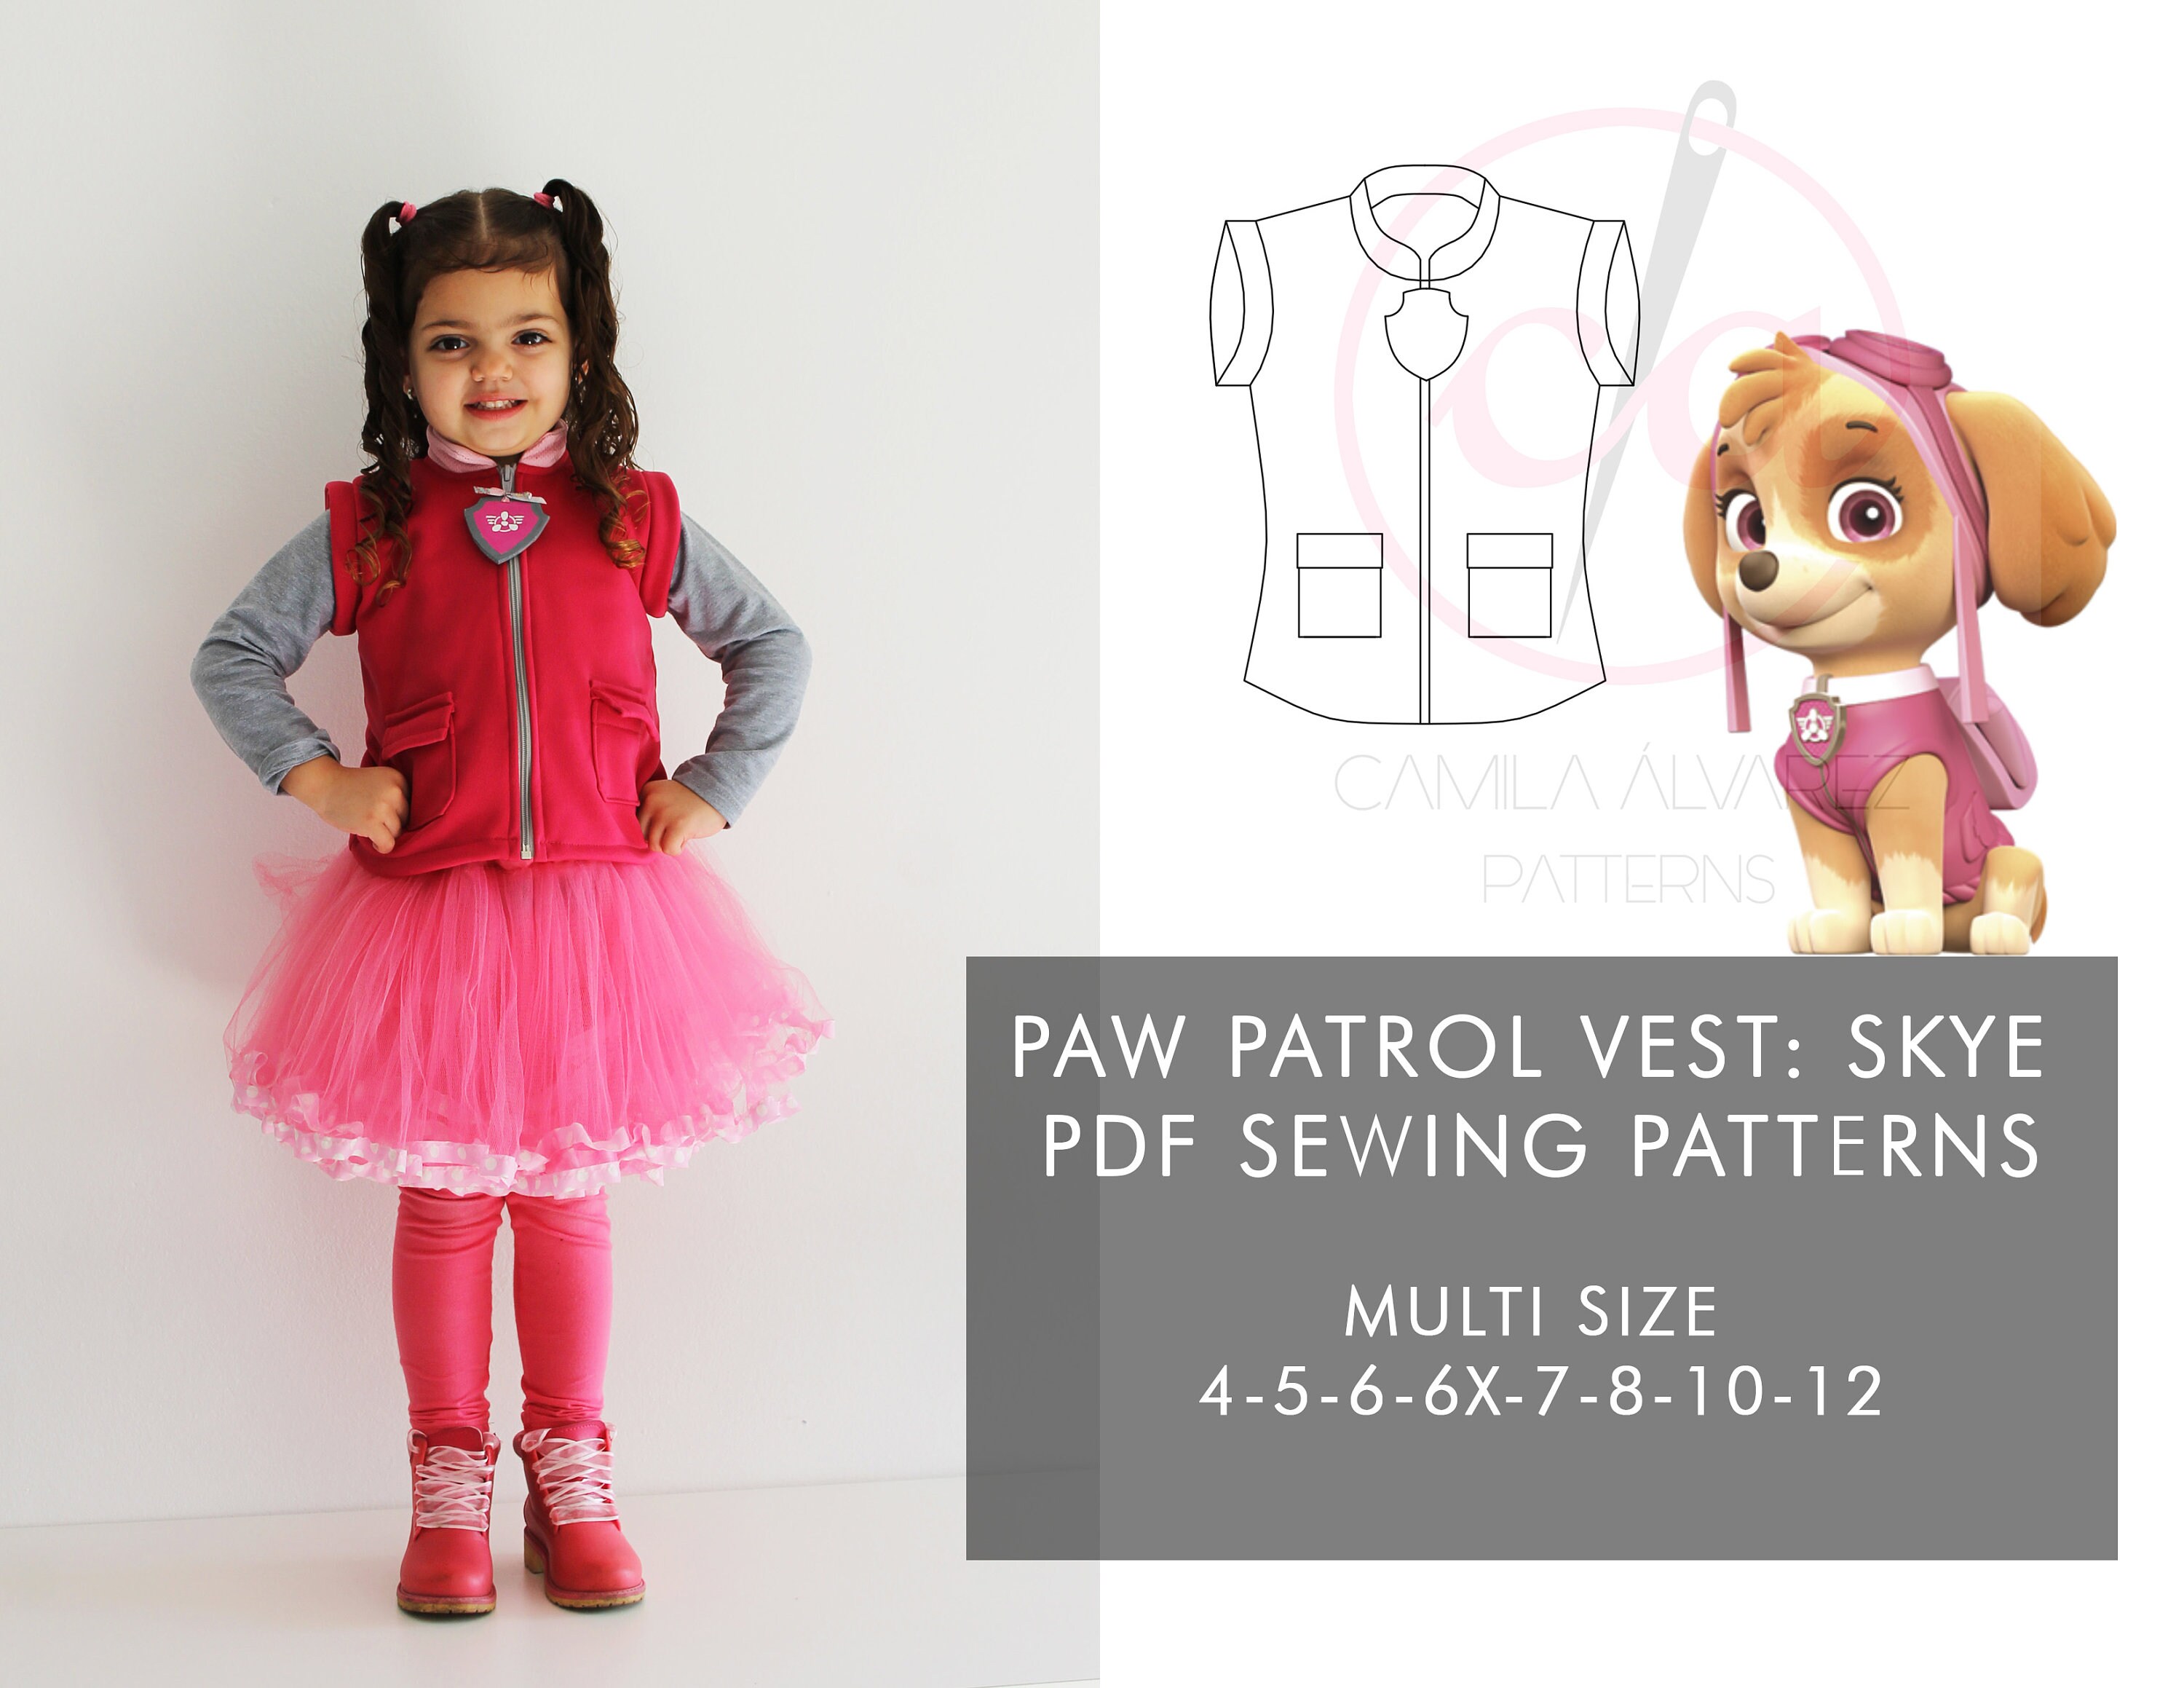 Paw Patrol PDF Sewing Patterns Skye Costume Etsy